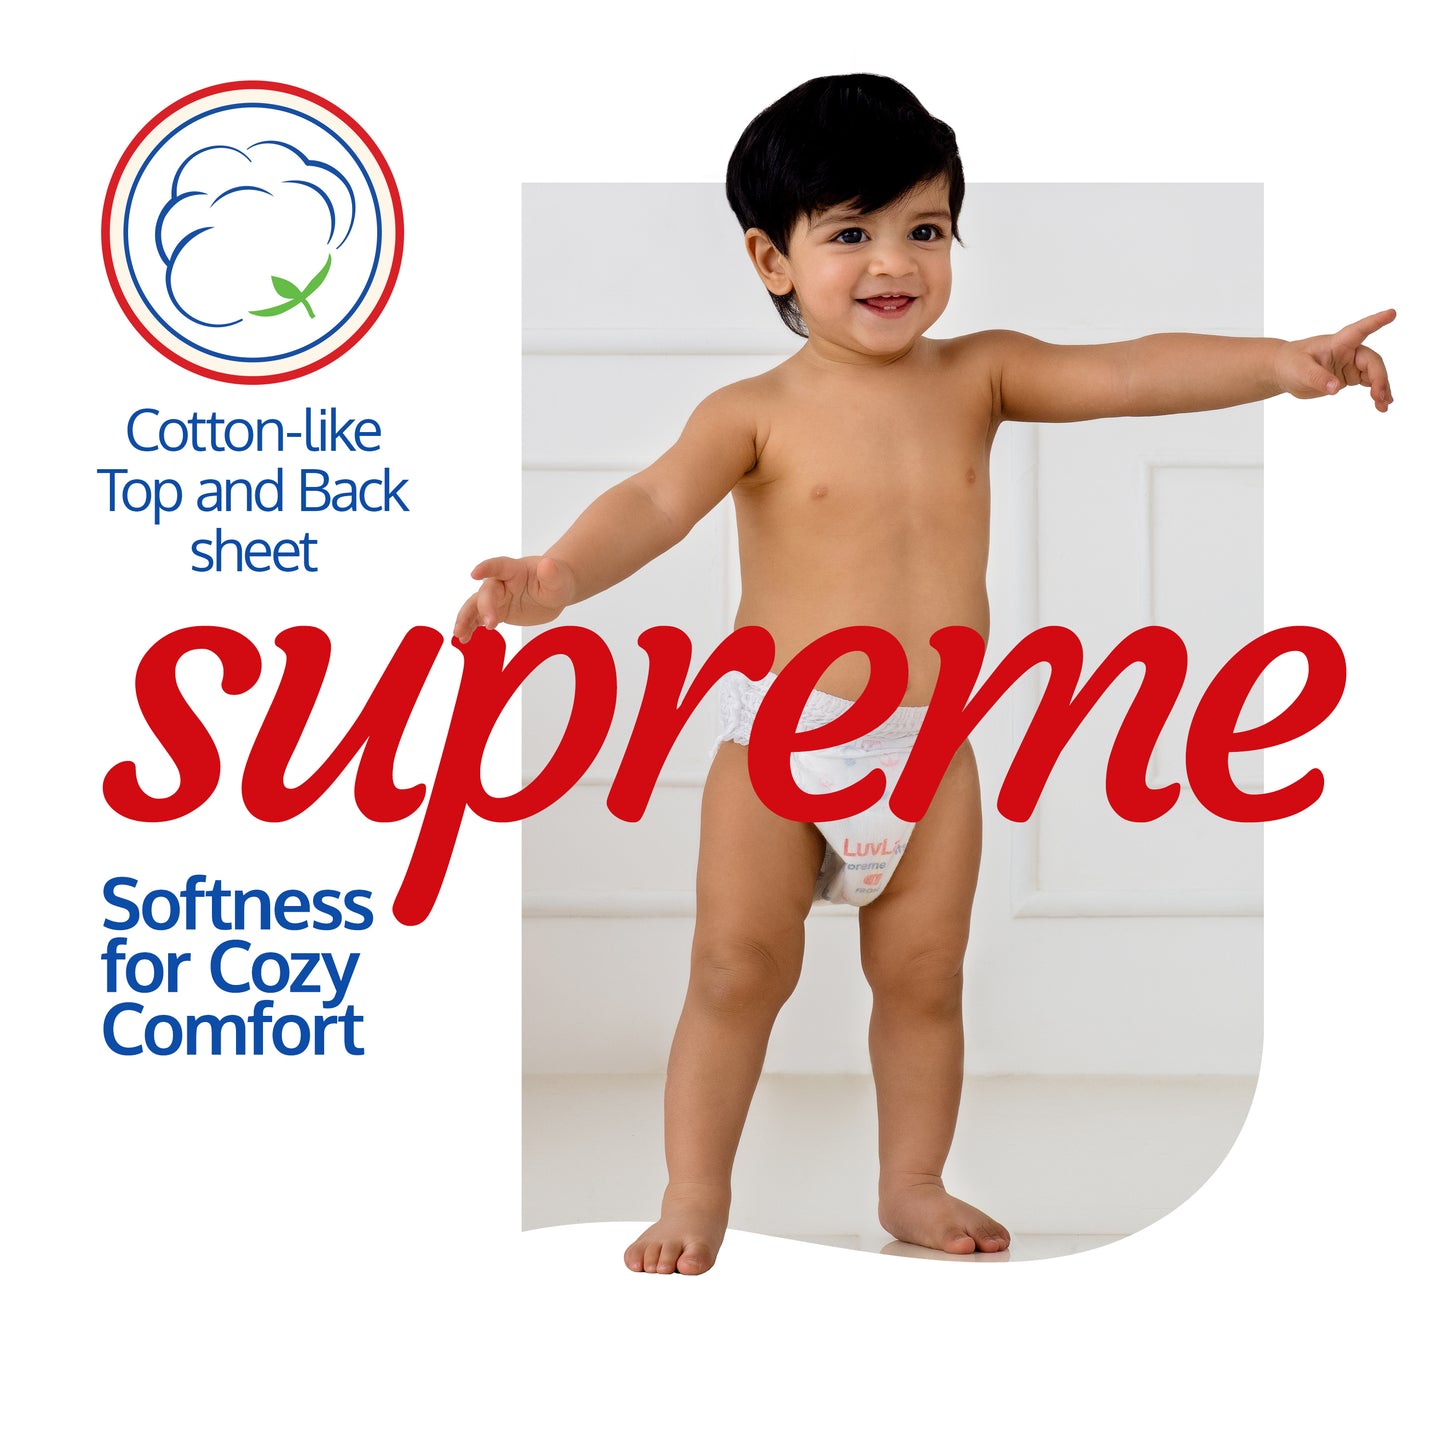 Supreme Diaper Pants Small (SM) 4 to 8Kg, 38Pcs